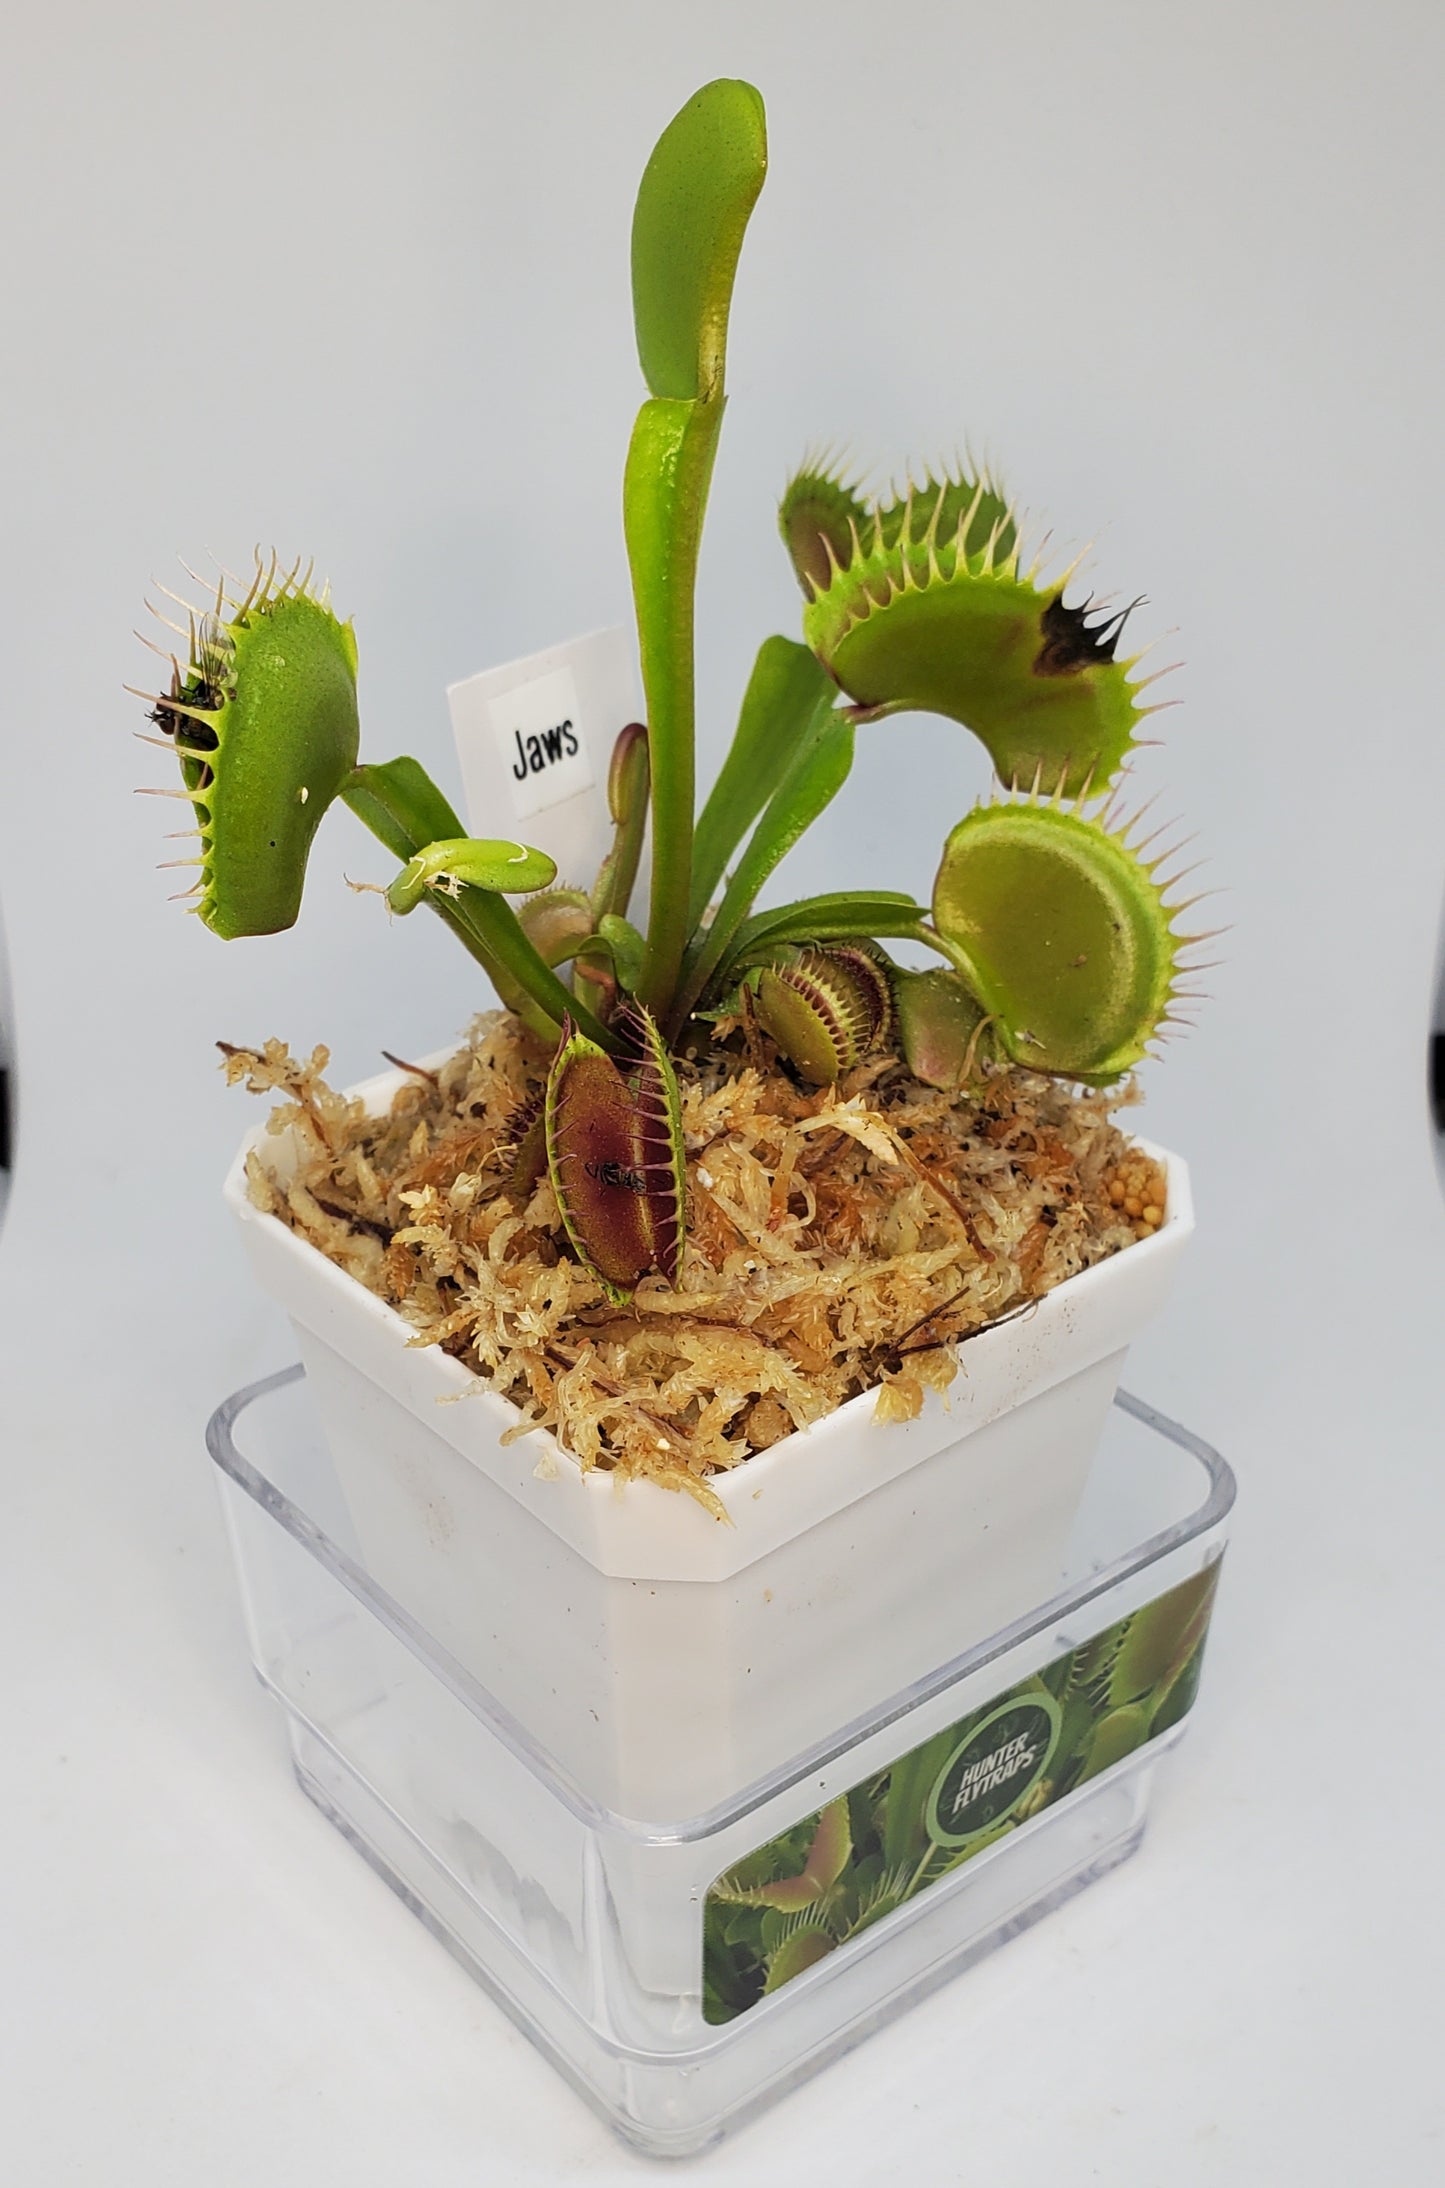 Jaws - Venus Flytrap Carnivorous Plant